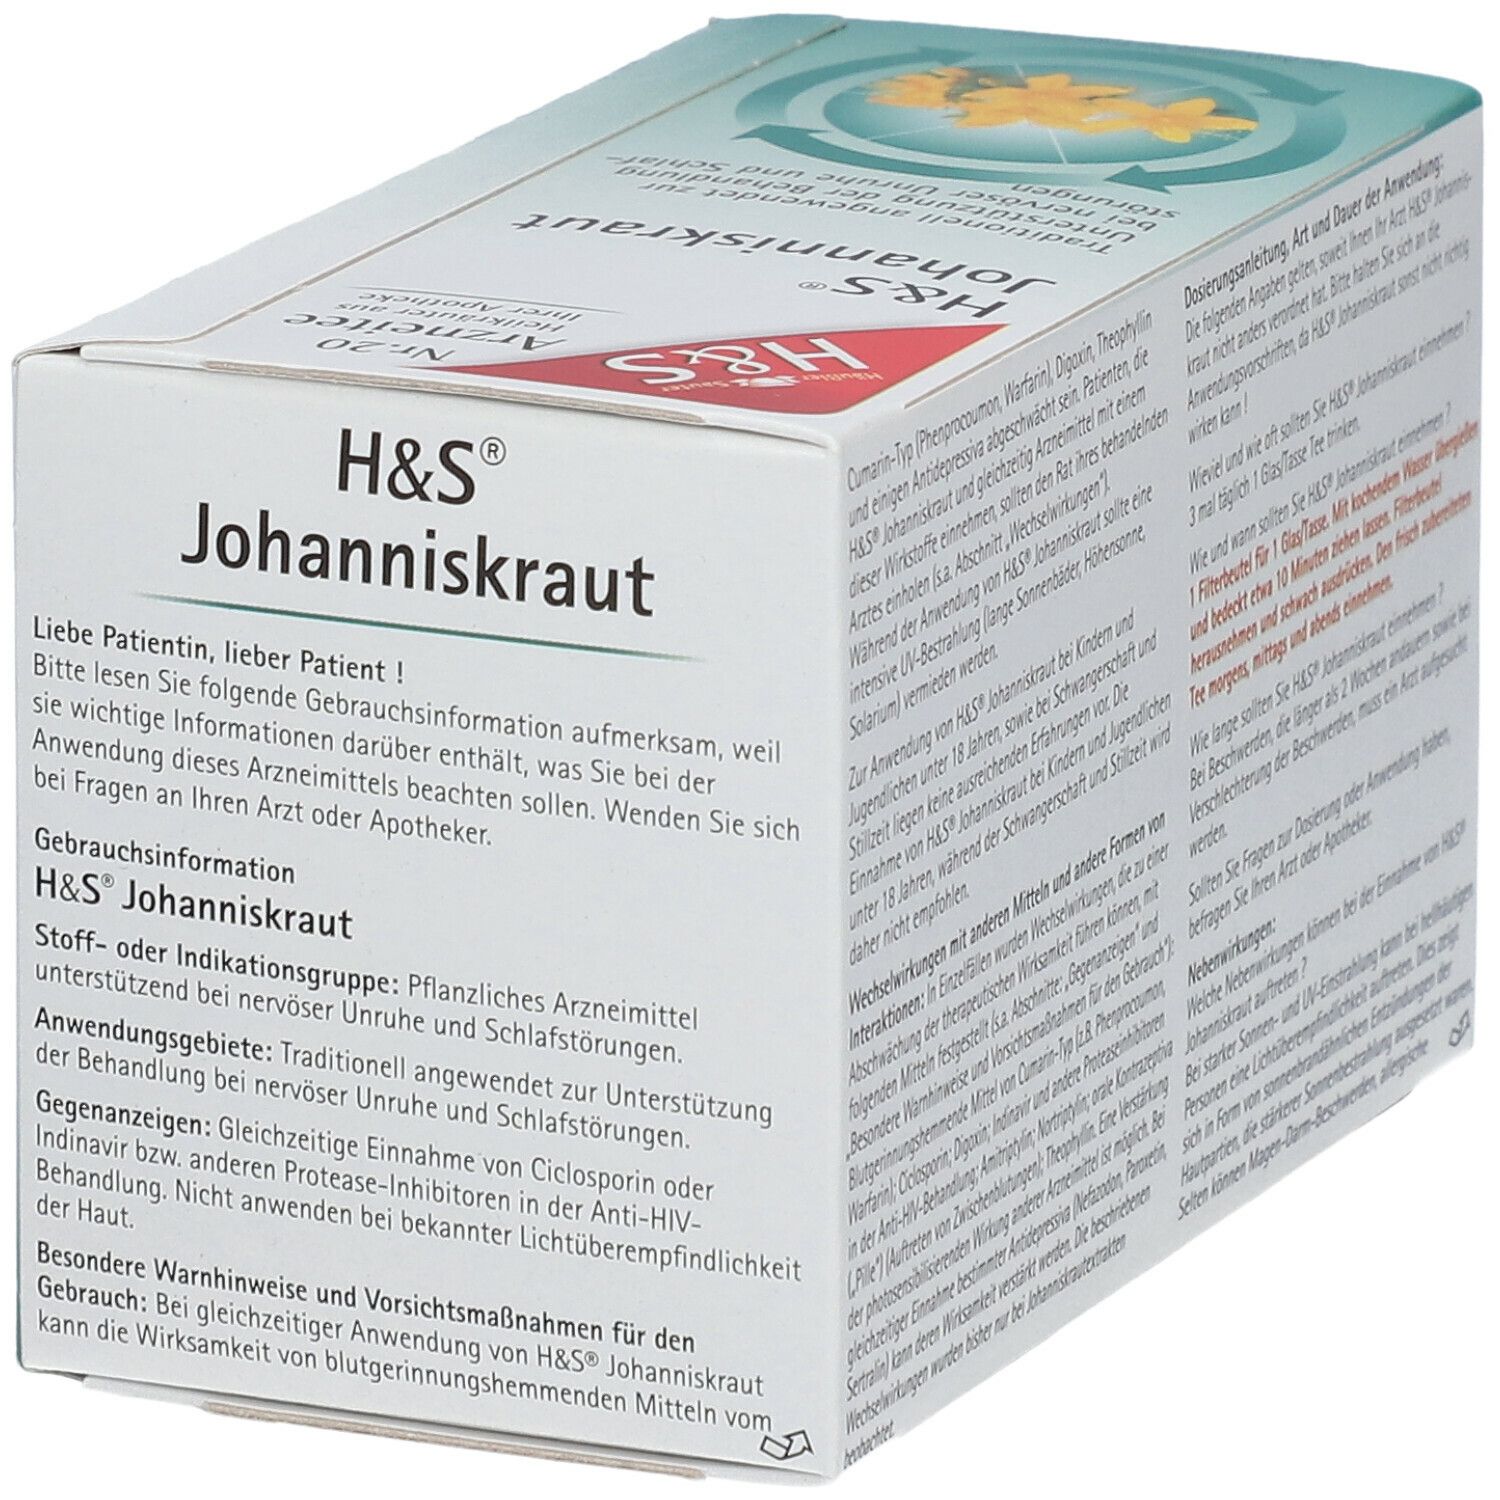 H&S Johanniskraut Nr. 20